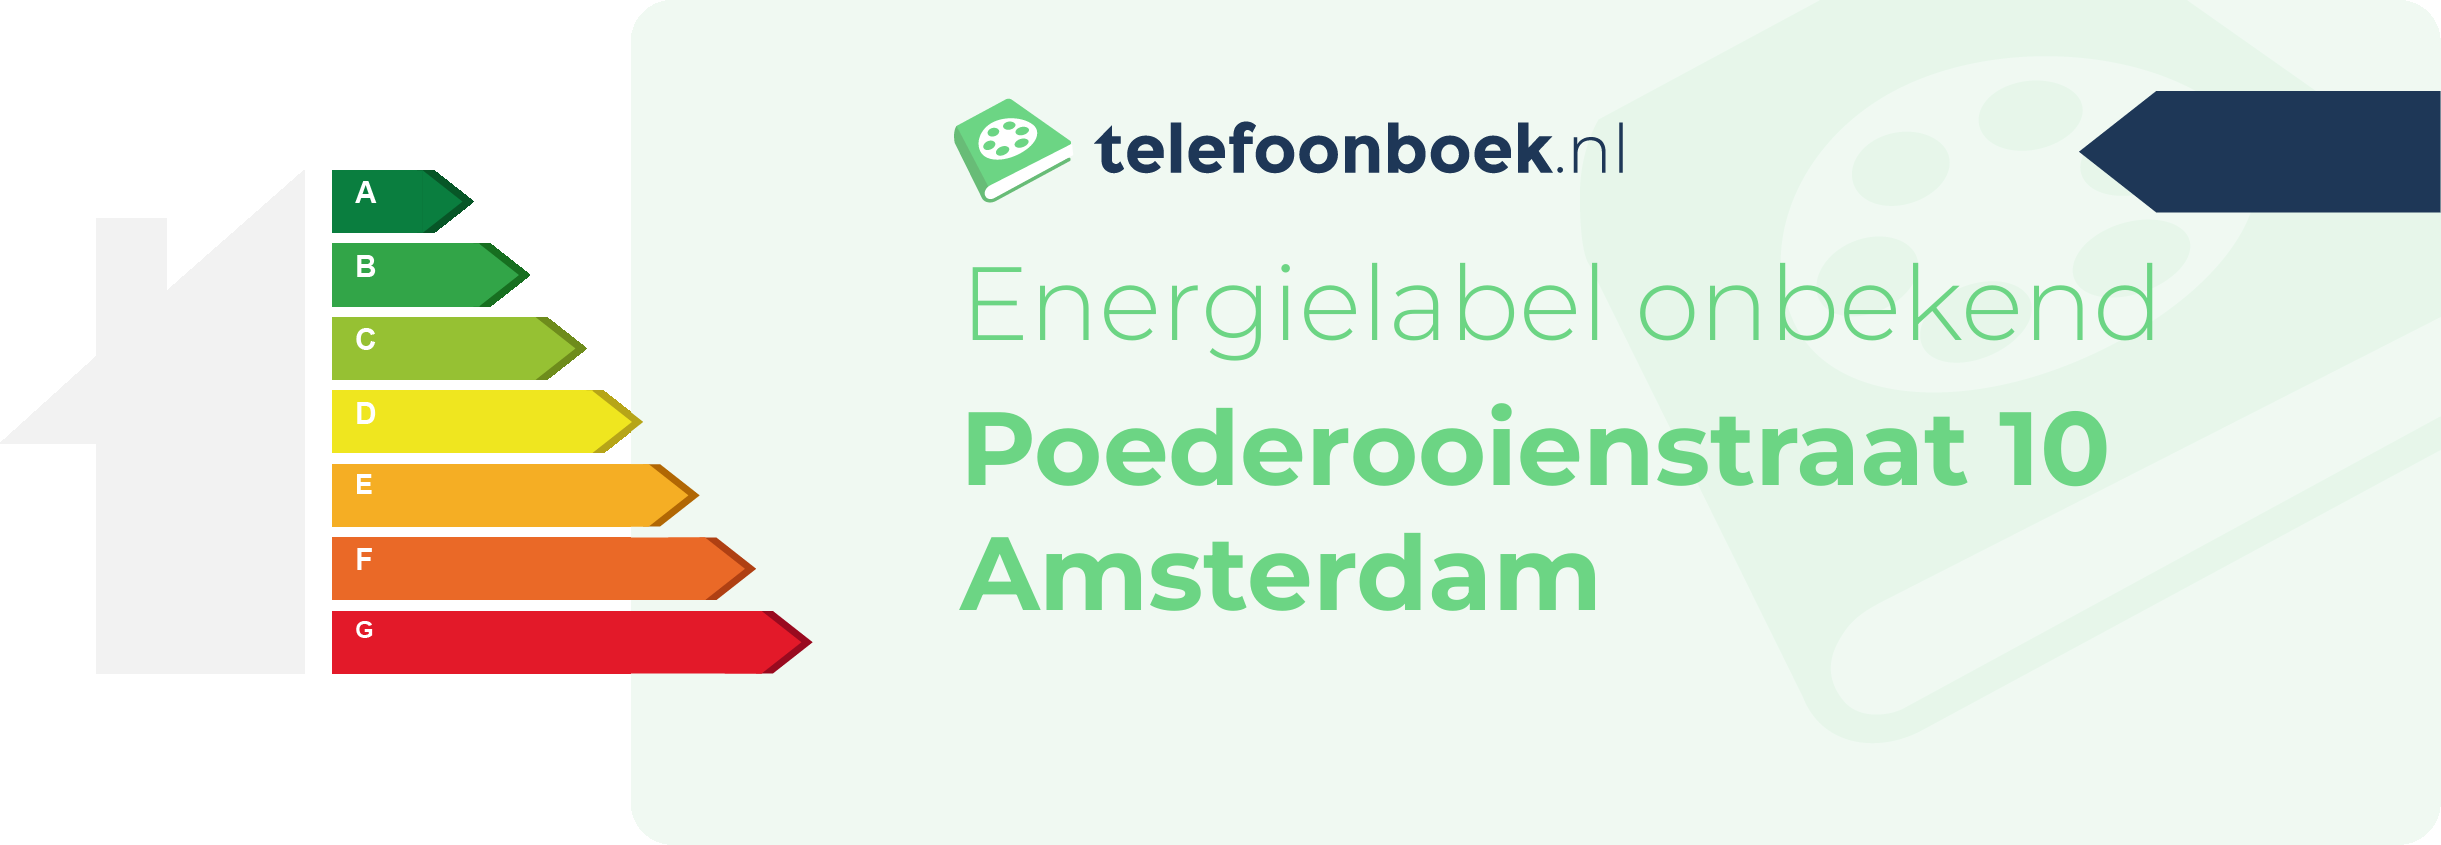 Energielabel Poederooienstraat 10 Amsterdam